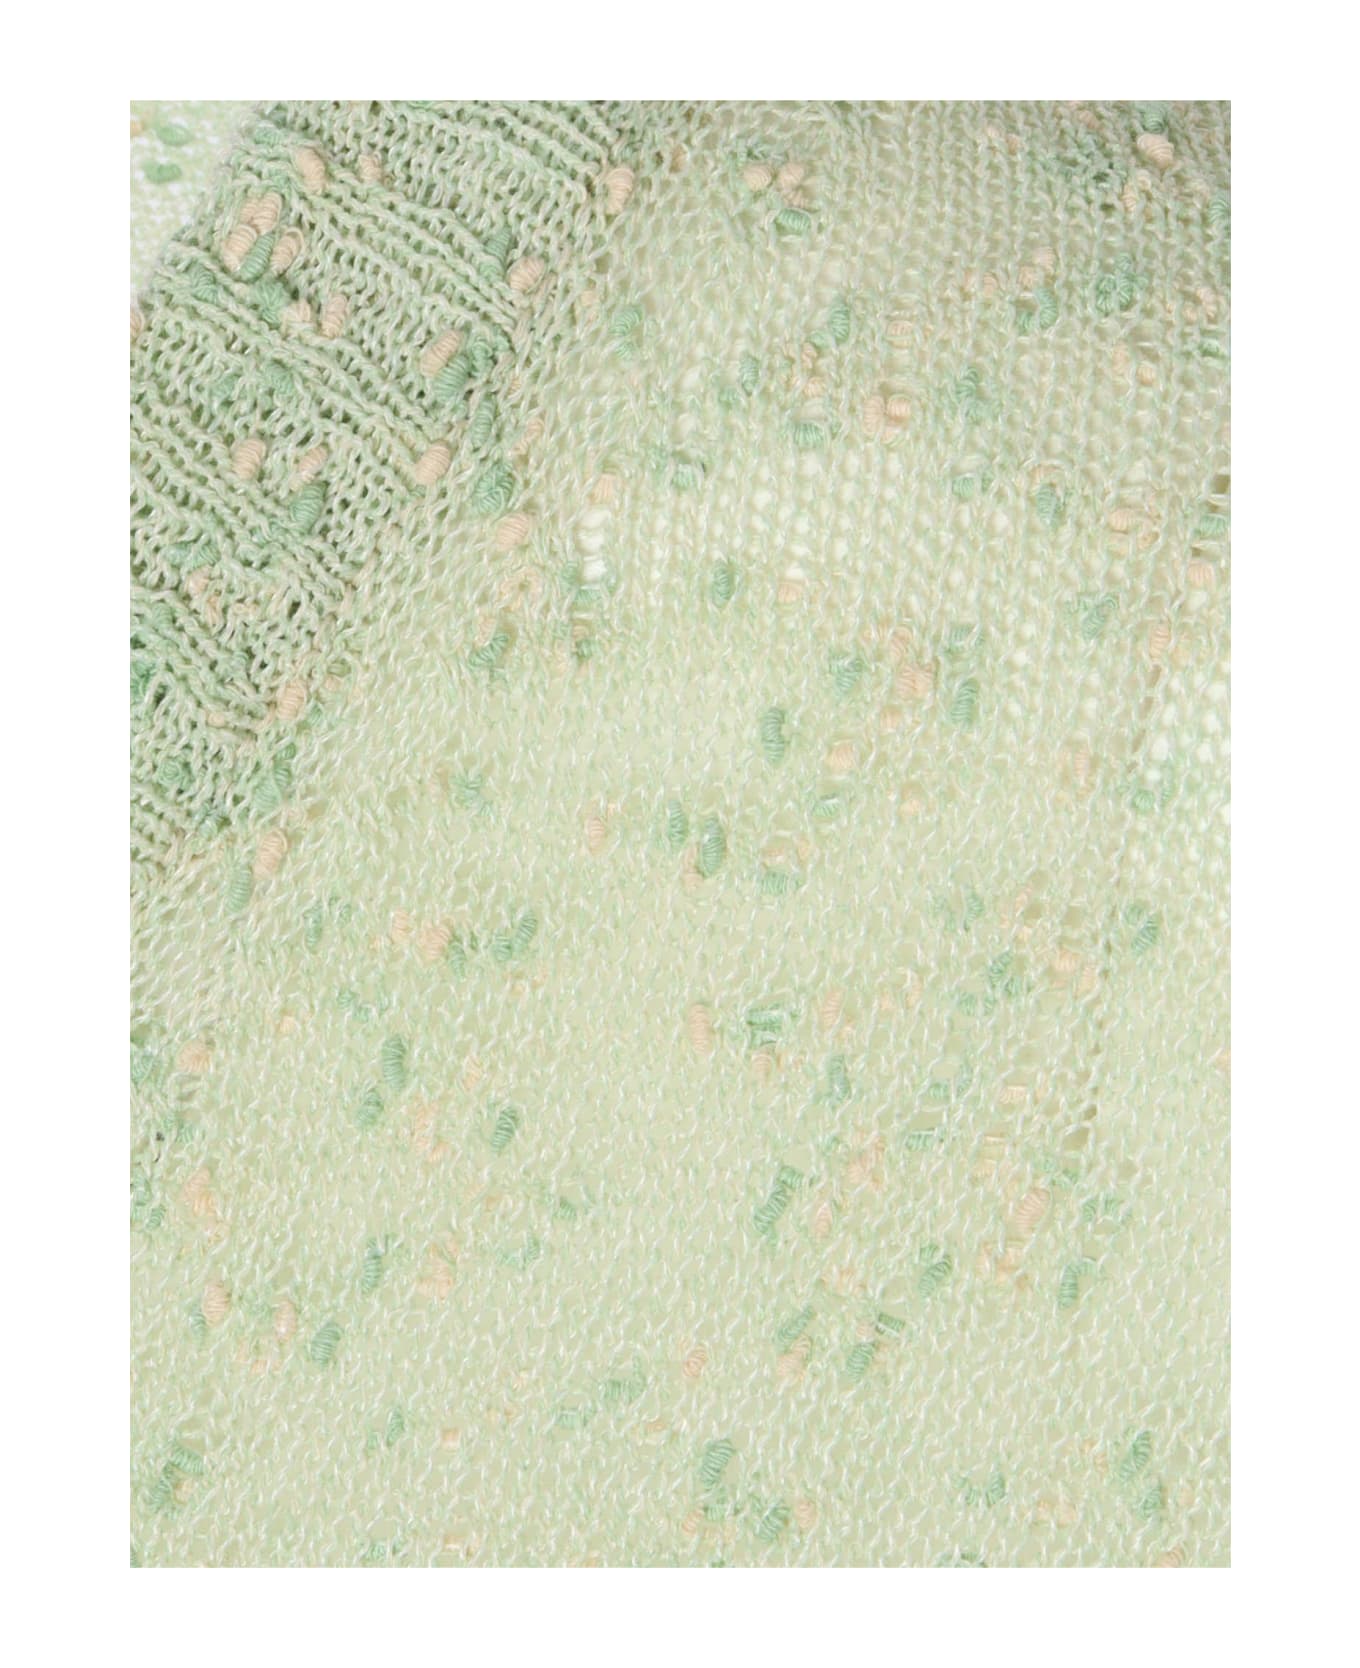 Aspesi Green Sweater - GREEN